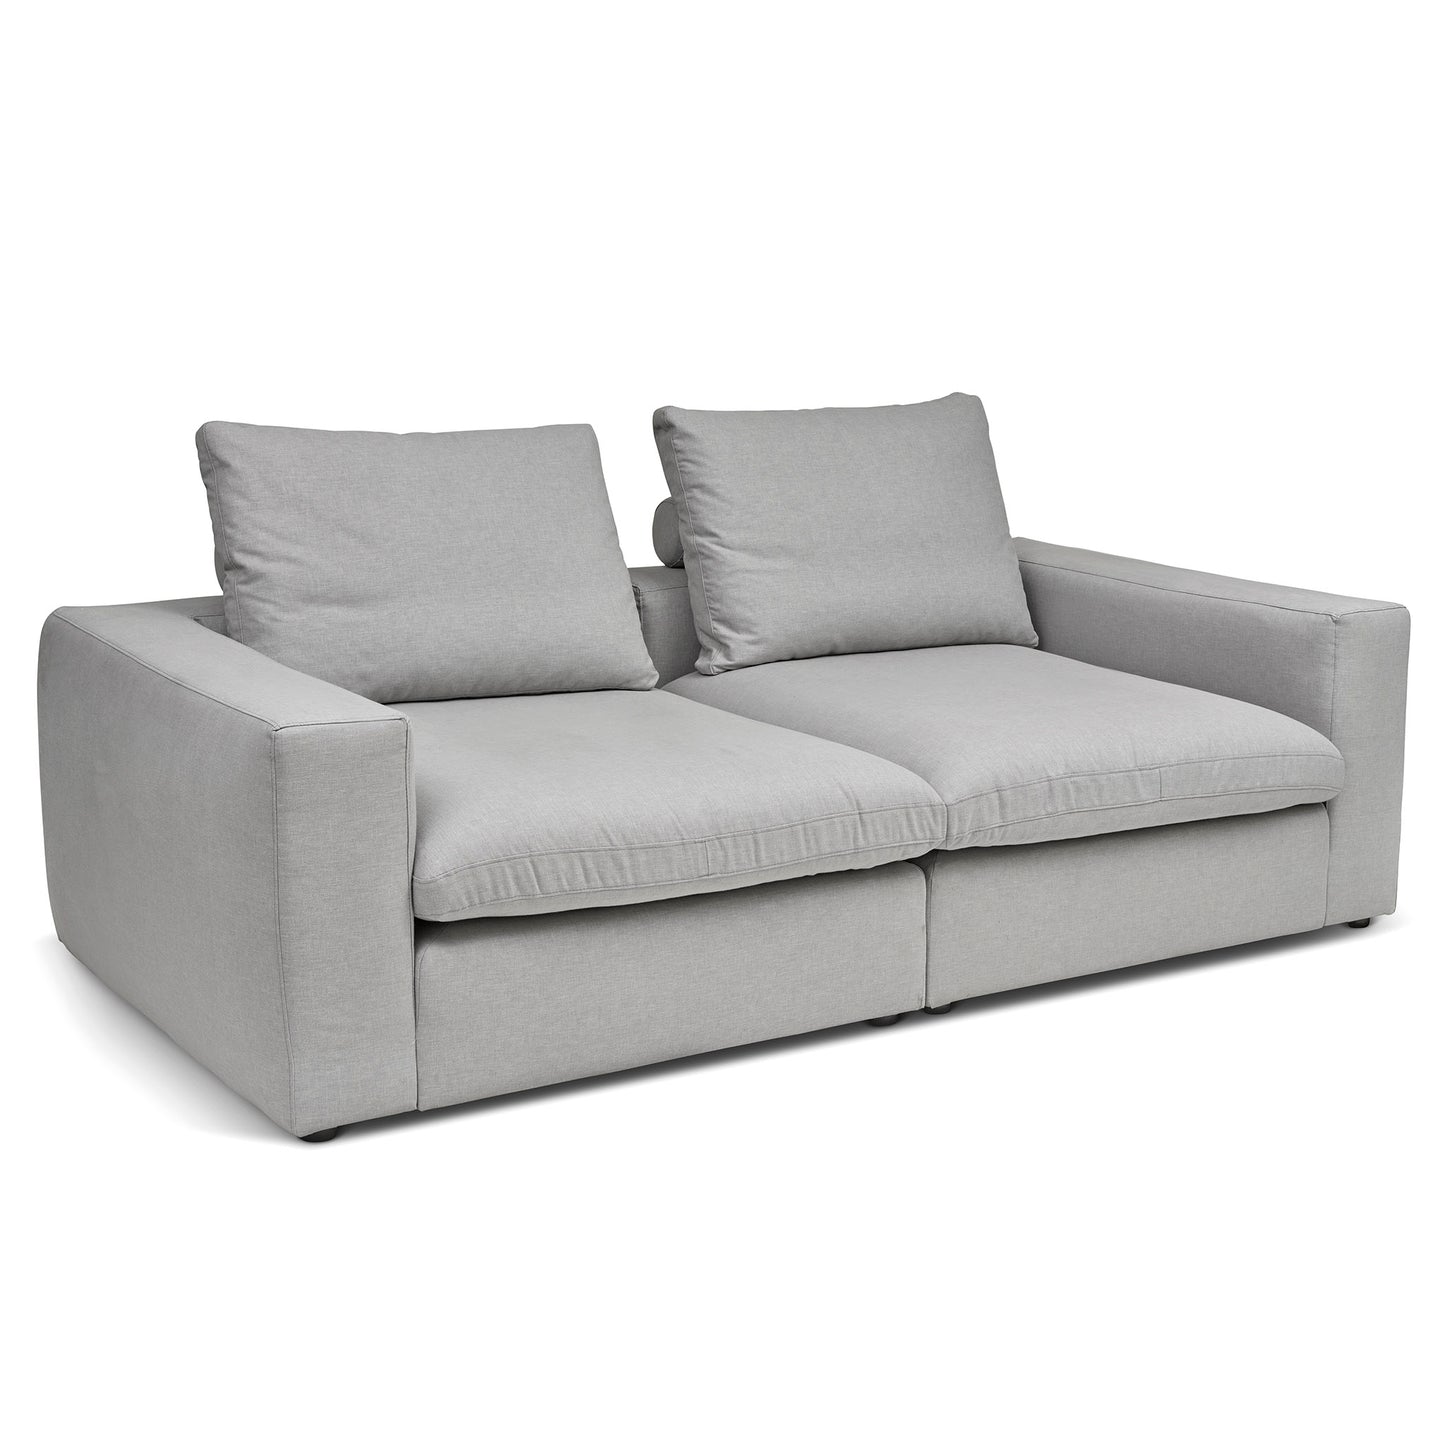 Extra djup 4-sits soffa i ljusgrå färg. Palazzo är en byggbar modulsoffa